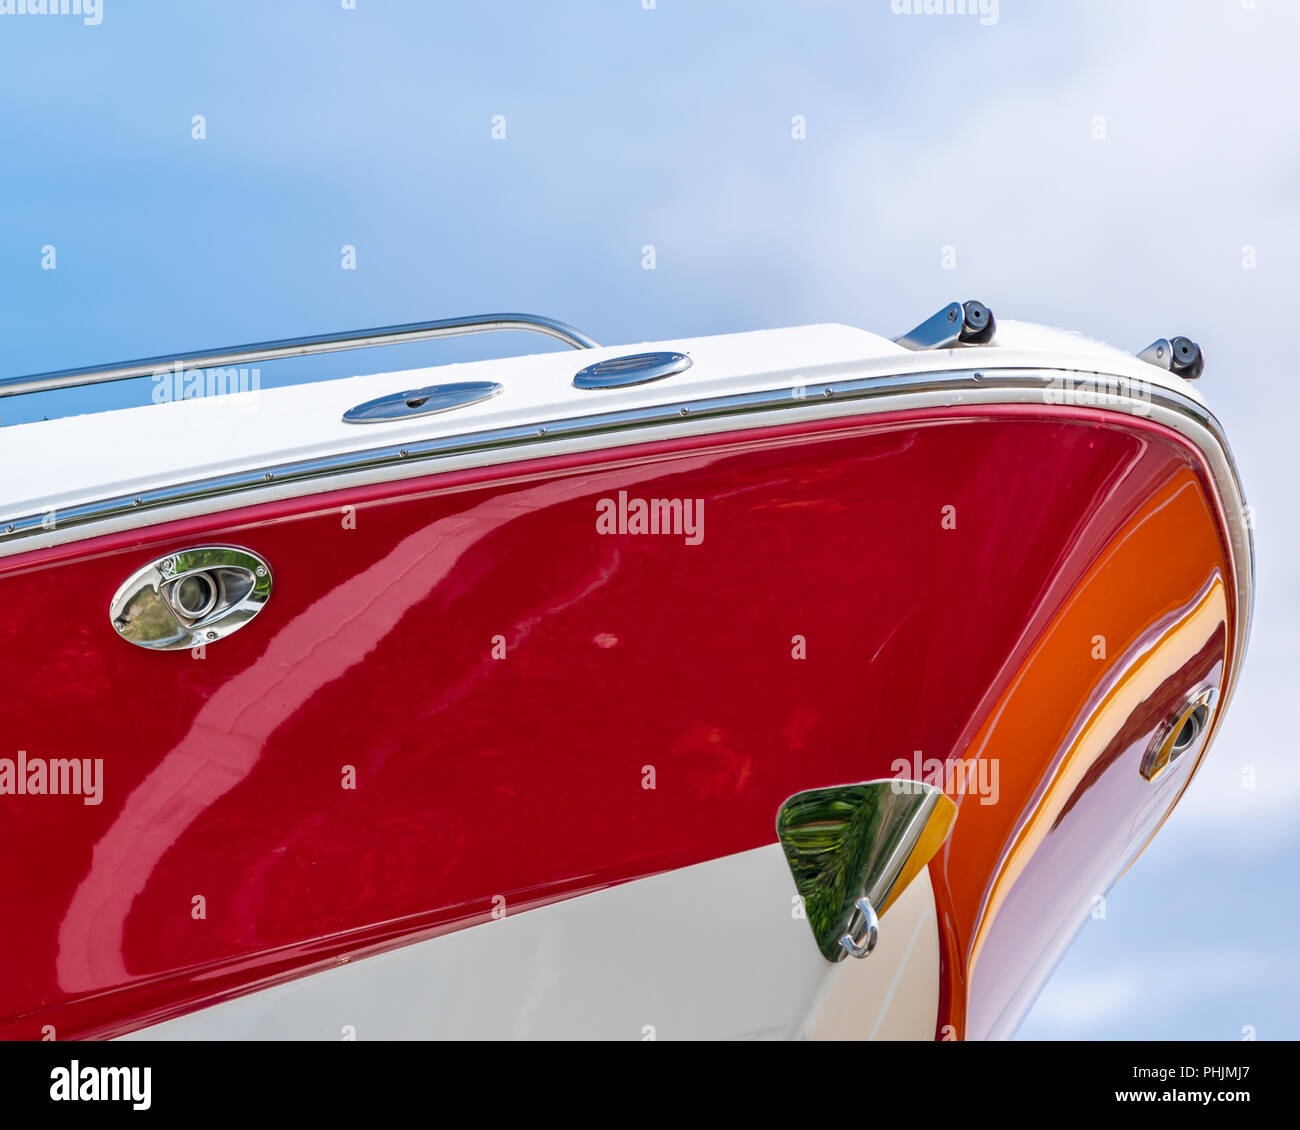 image détaillée d'un arc d'un bateau en fibre de verre rouge et blanc contre un ciel bleu Banque D'Images